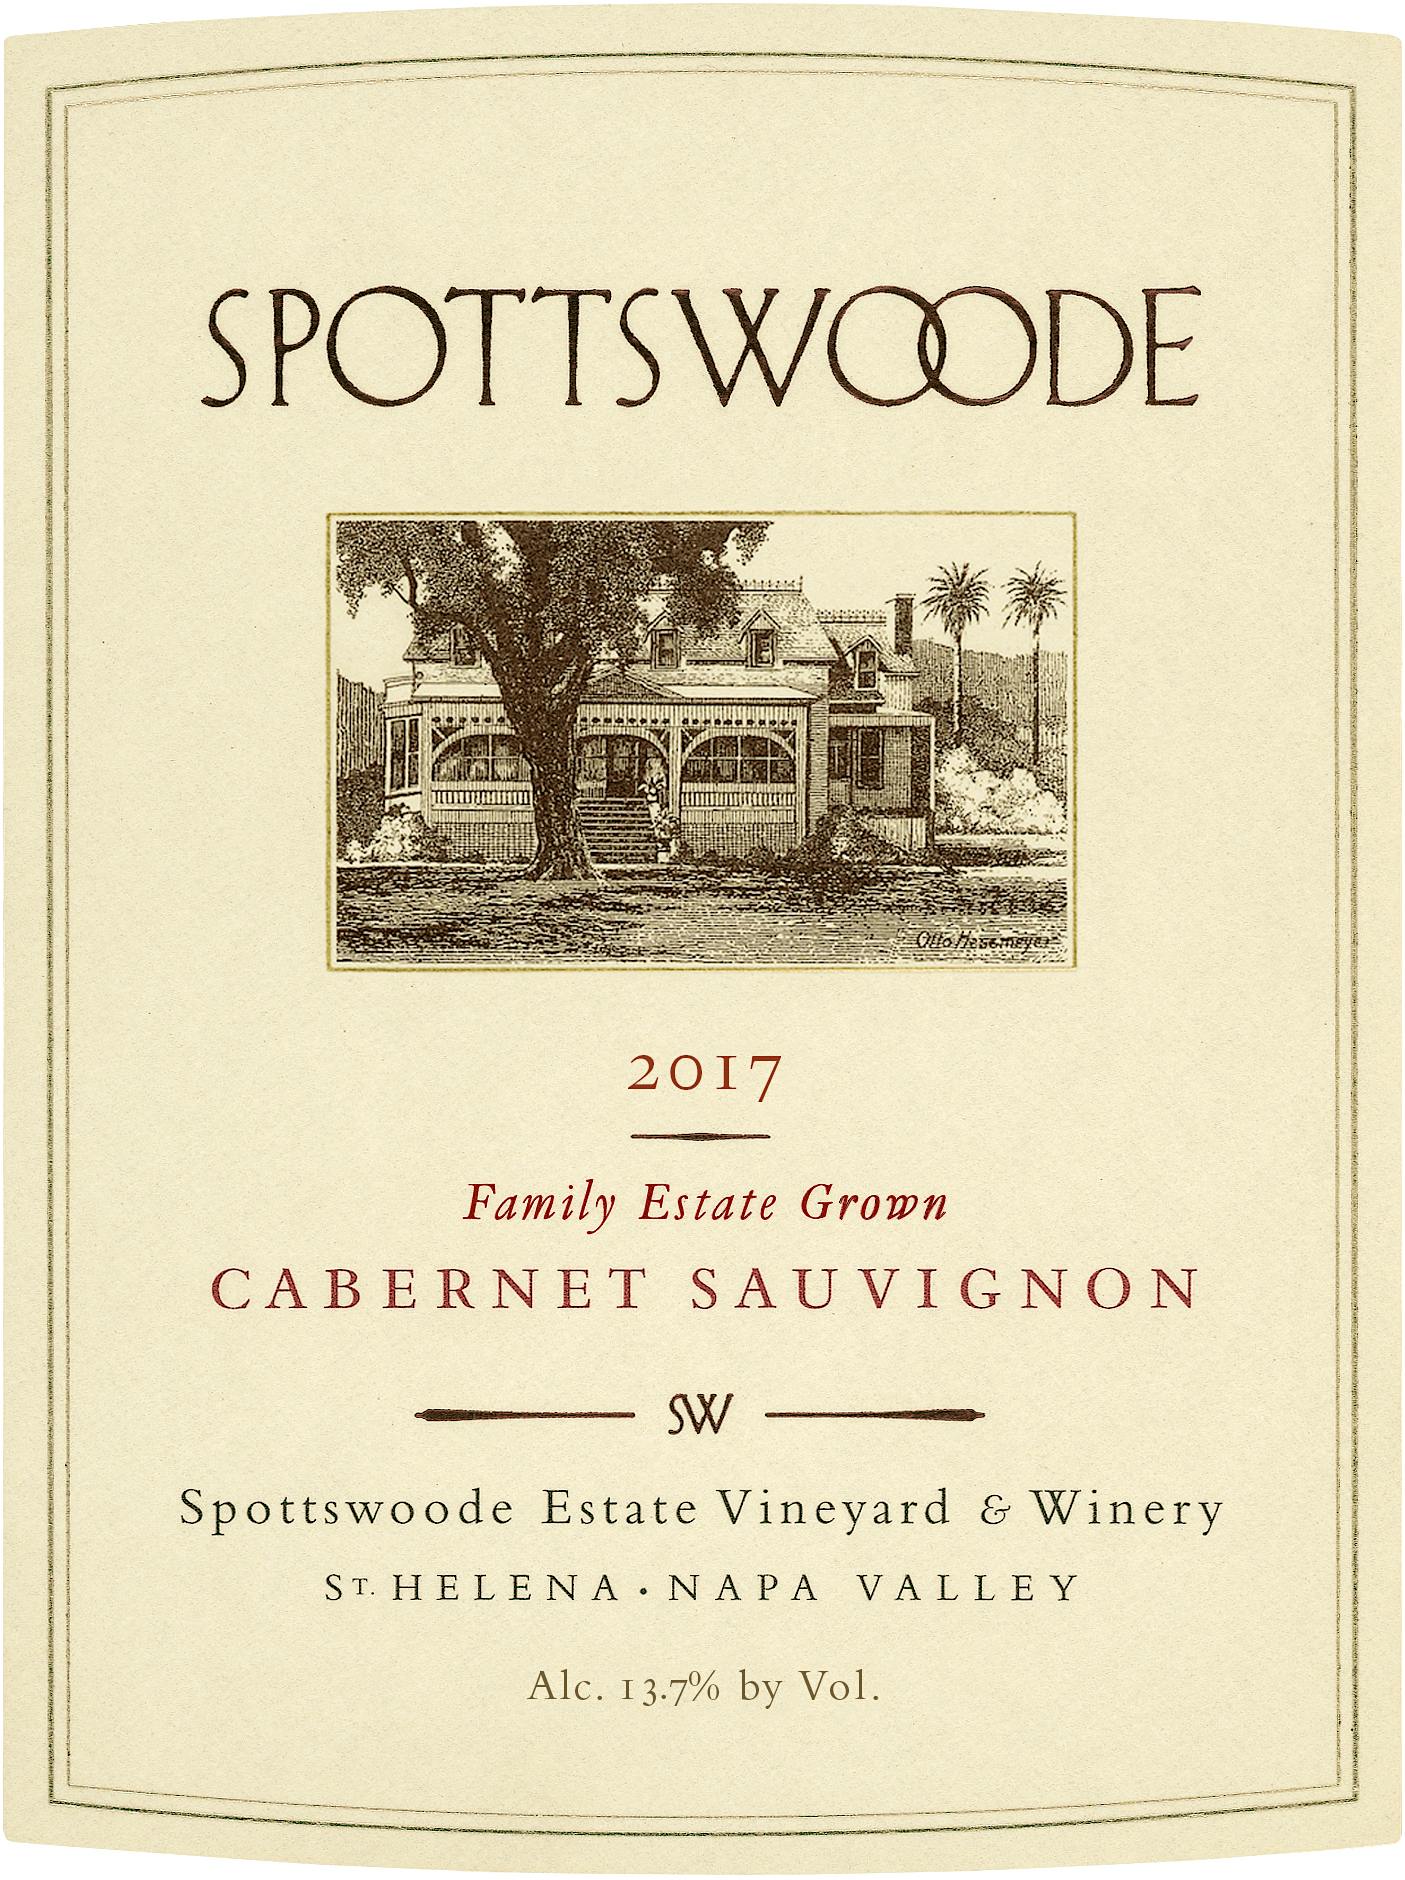 Label for Spottswoode